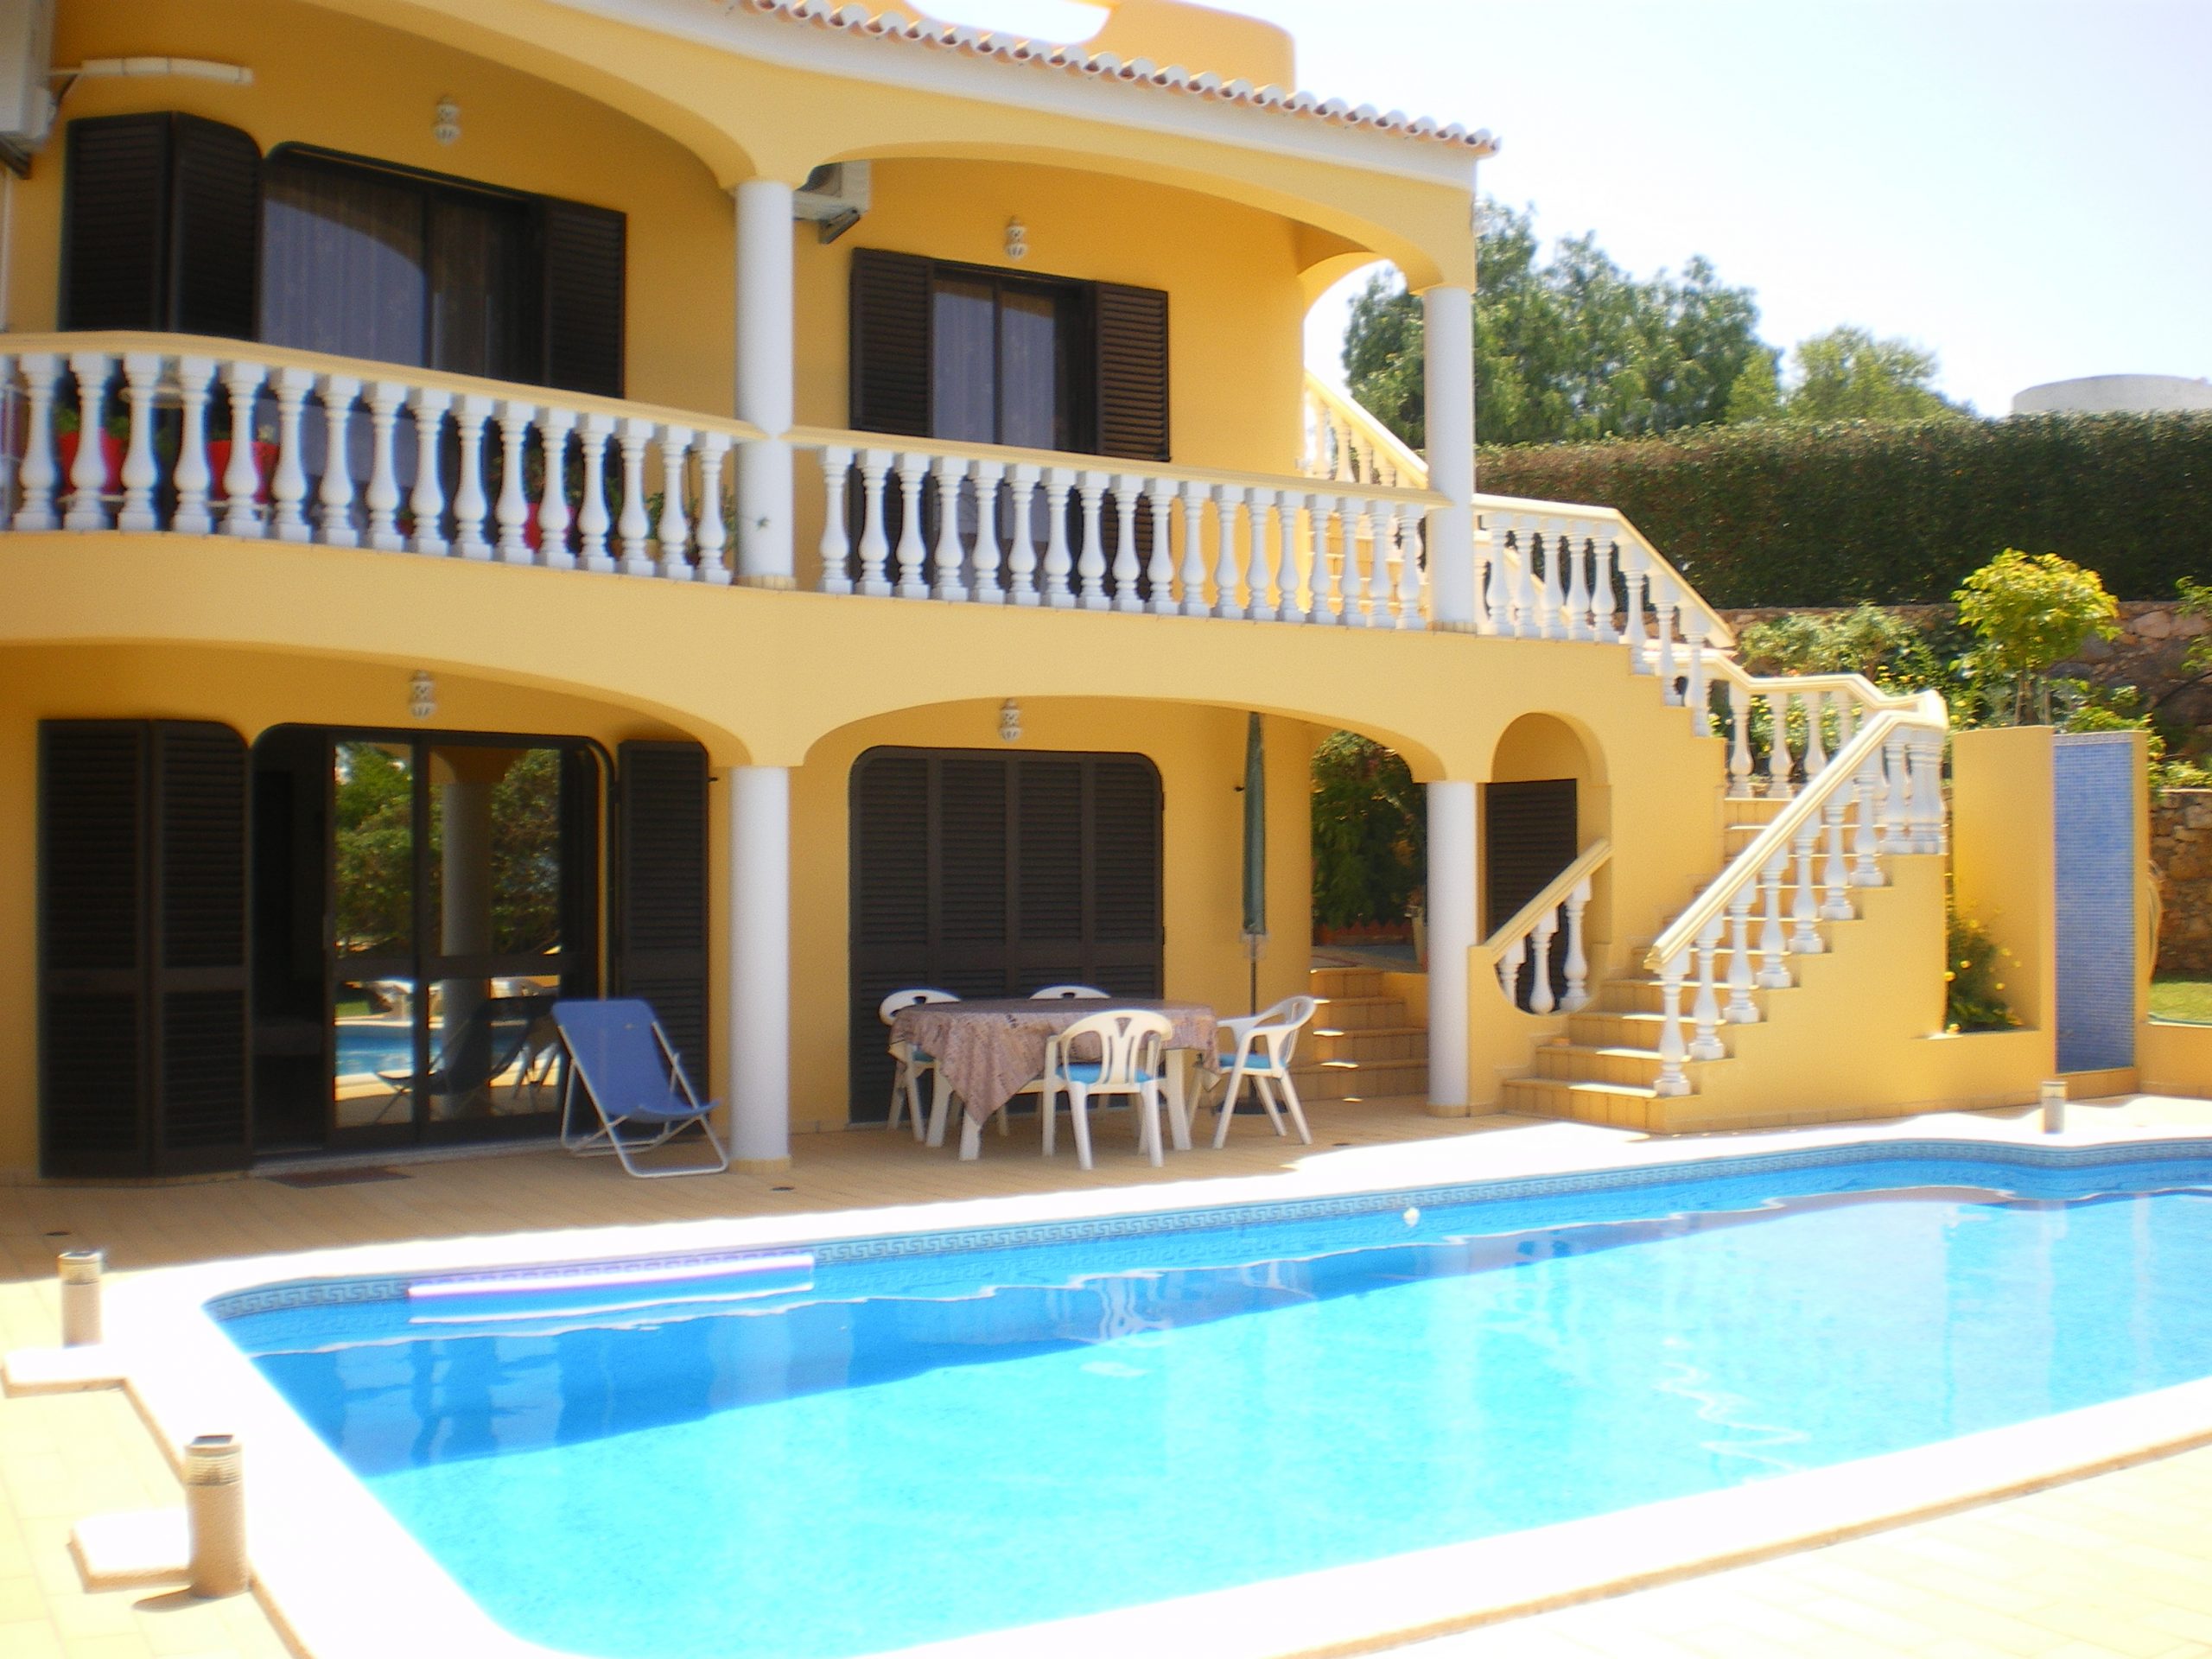 Rent House 8 Guests In Lagoa, Algarve Portugal - Cometoalgarve à Piscine De Sete